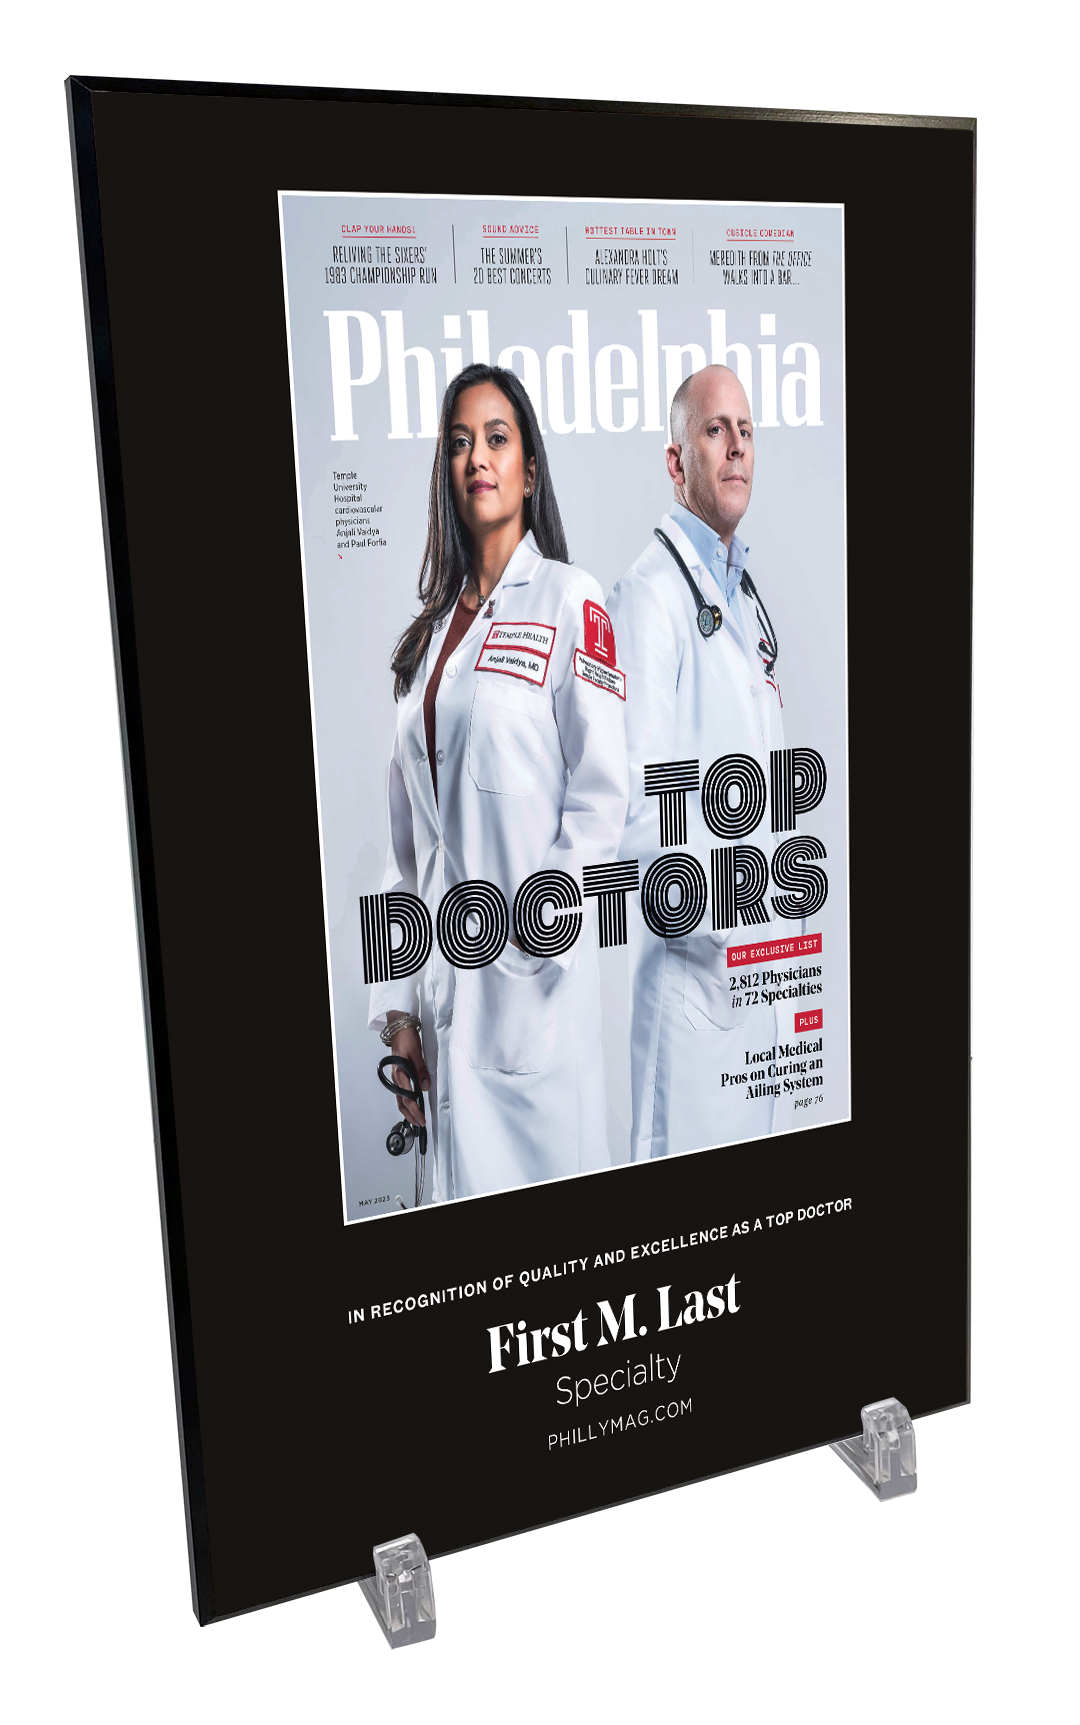 Philadelphia magazine Top Doctors Cover Award Plaque